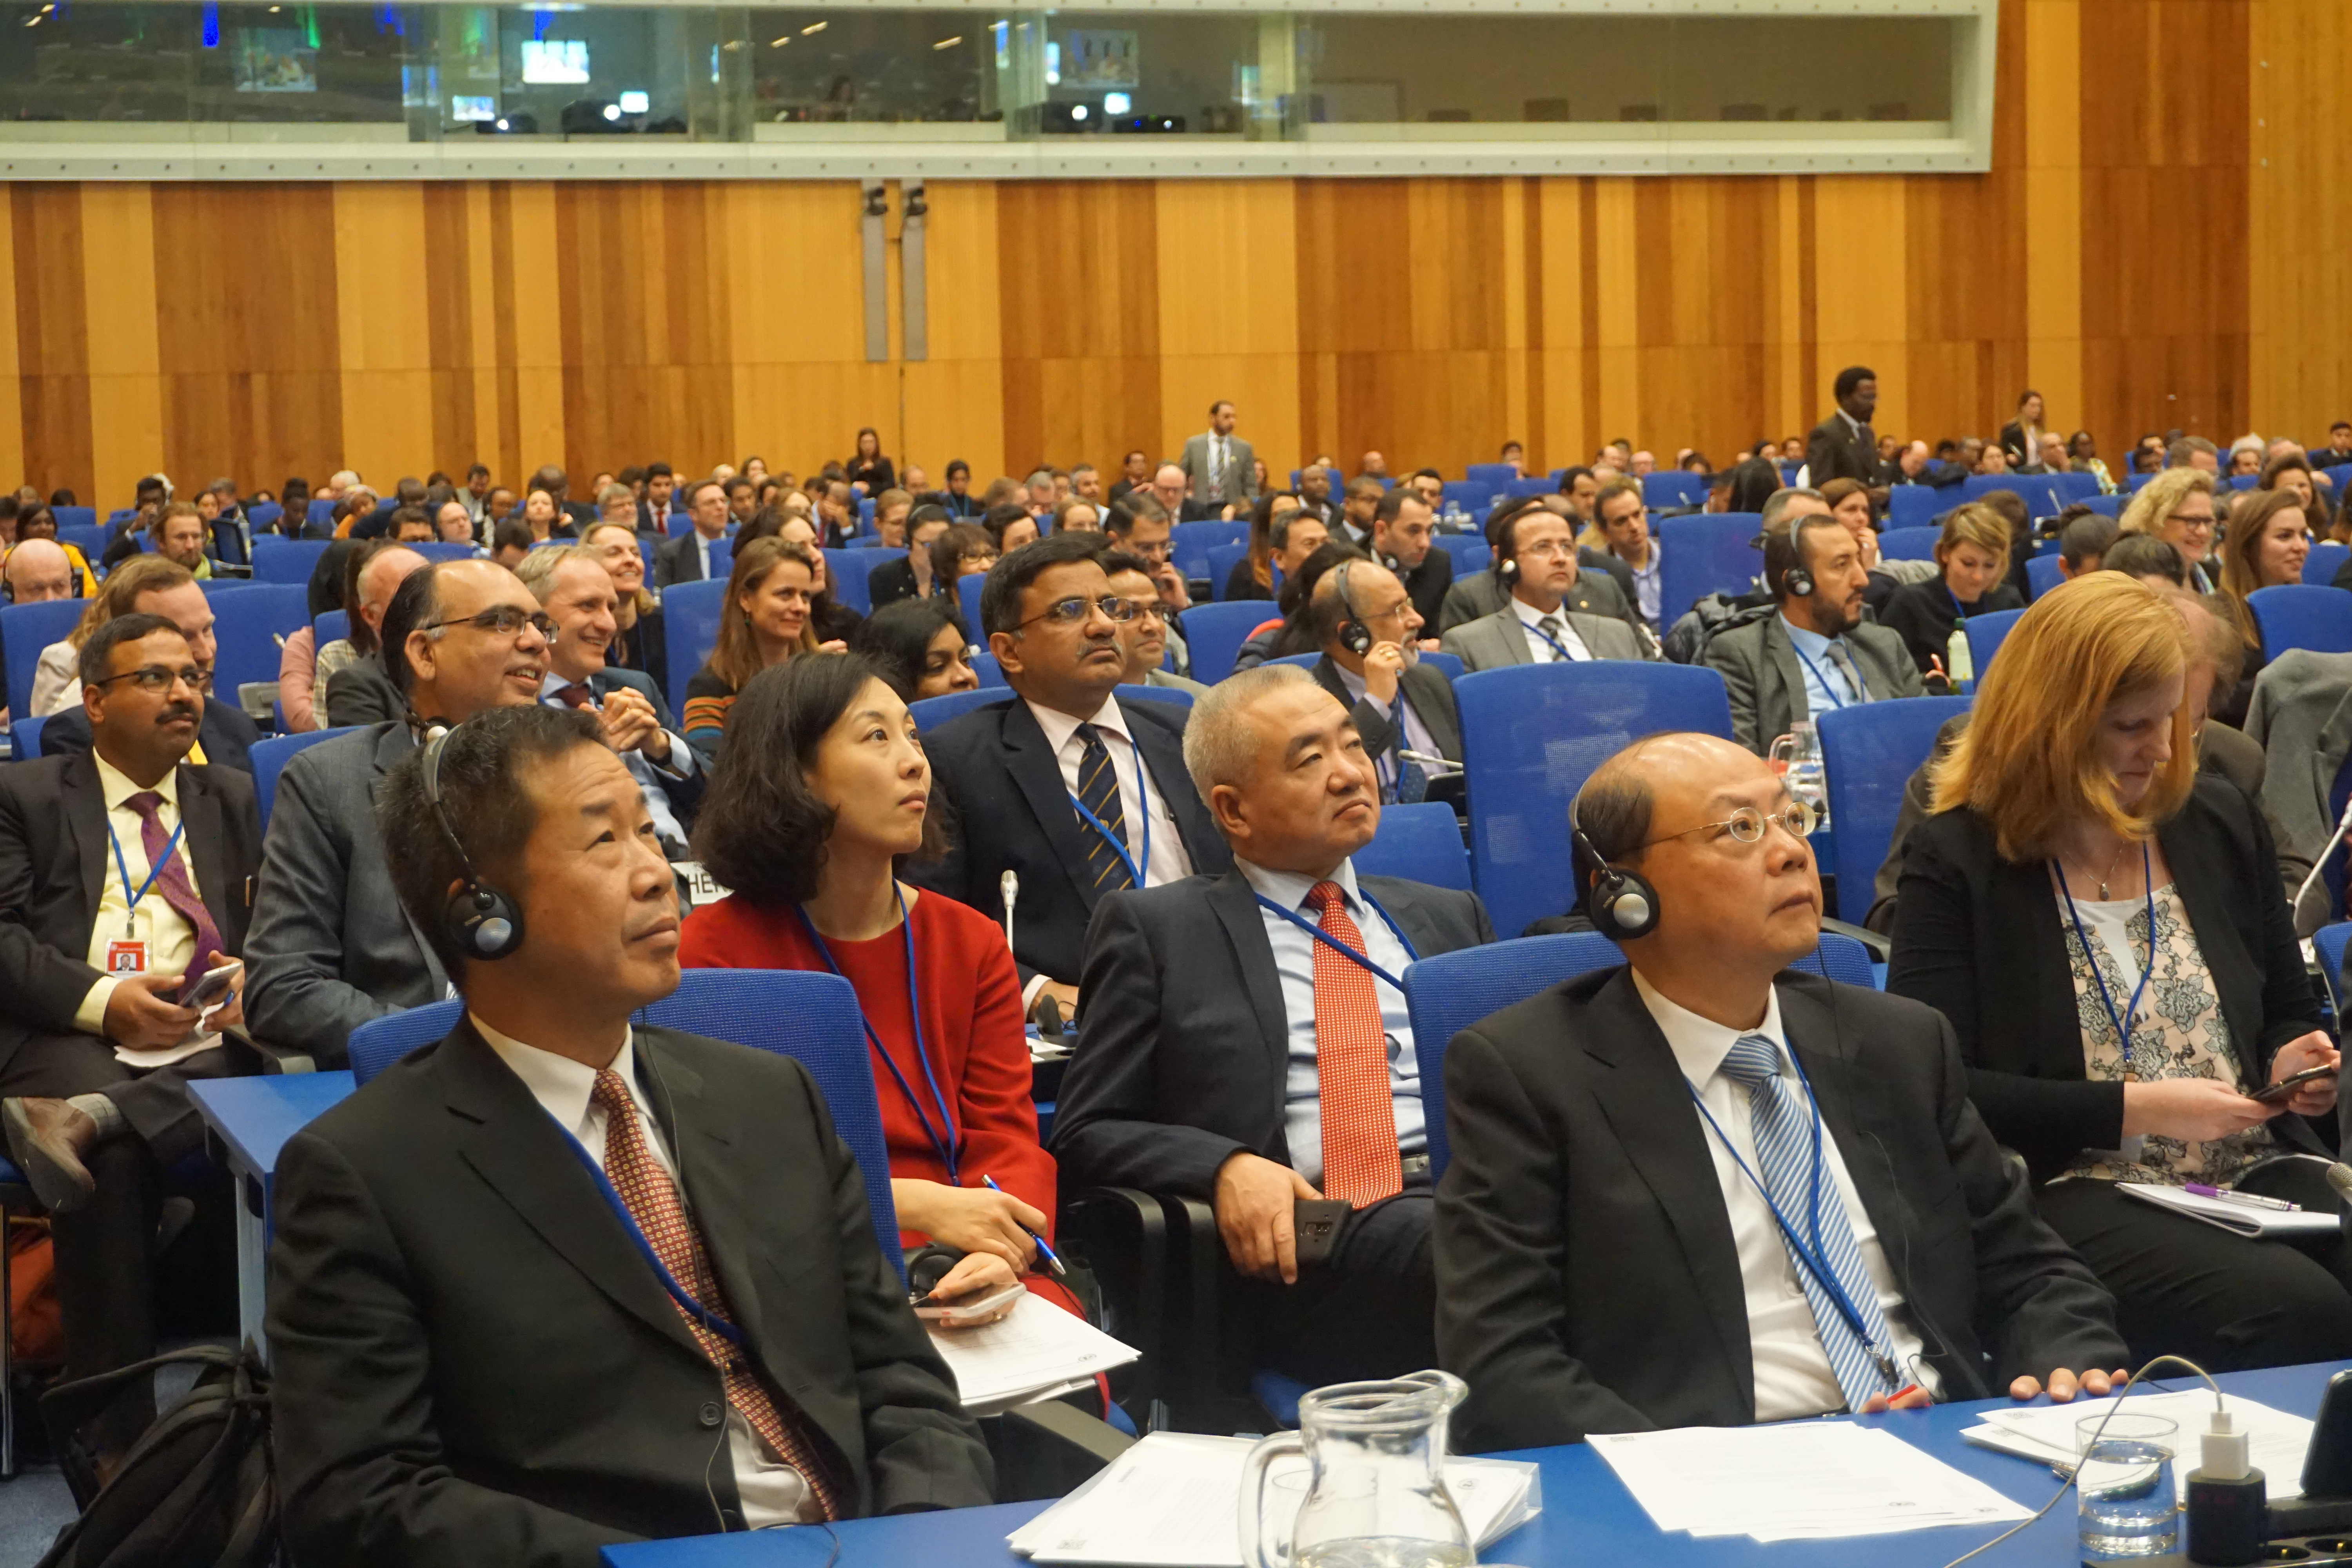 Participantes en vestimenta formal, sentados en una gran sala de conferencias, escuchando muy atentamente a los oradores.